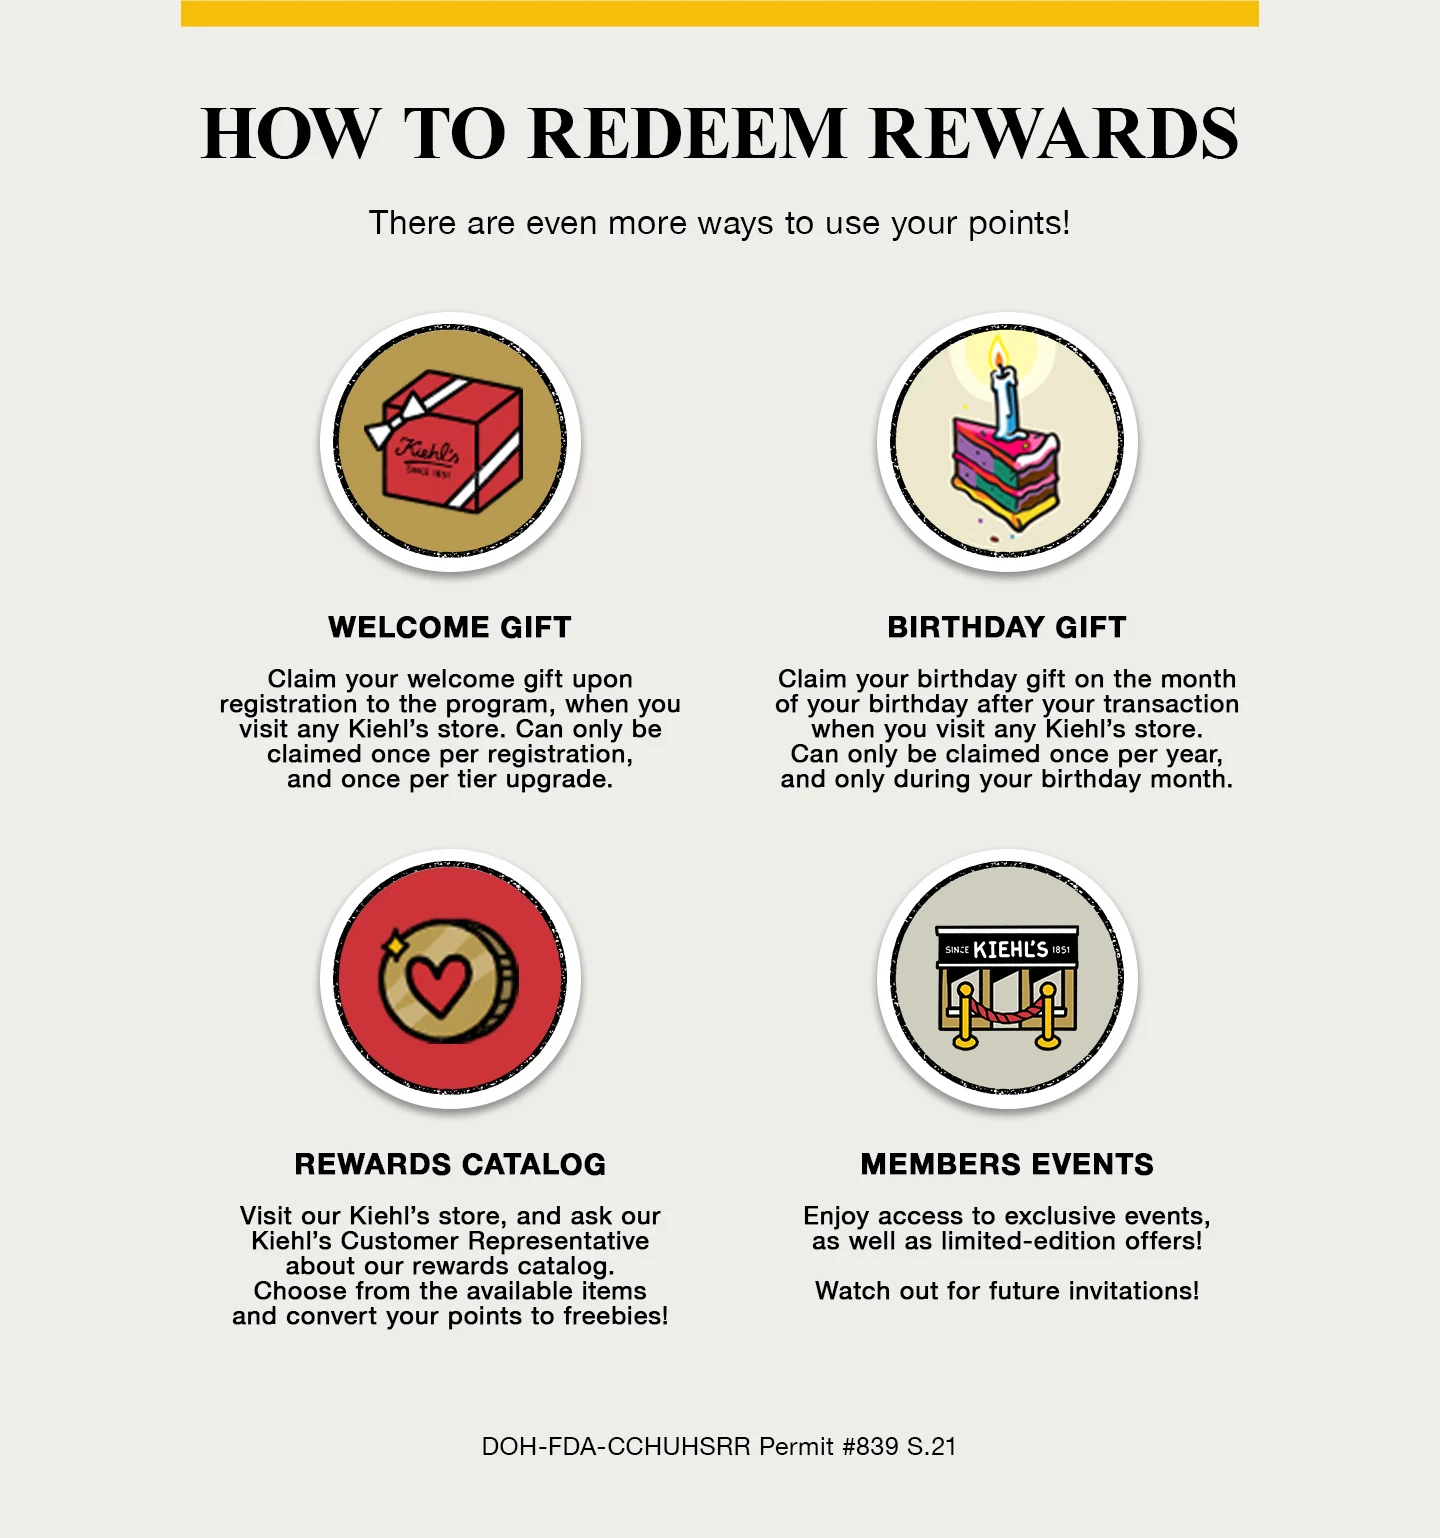 Redeeming Kiehl's loyalty reward